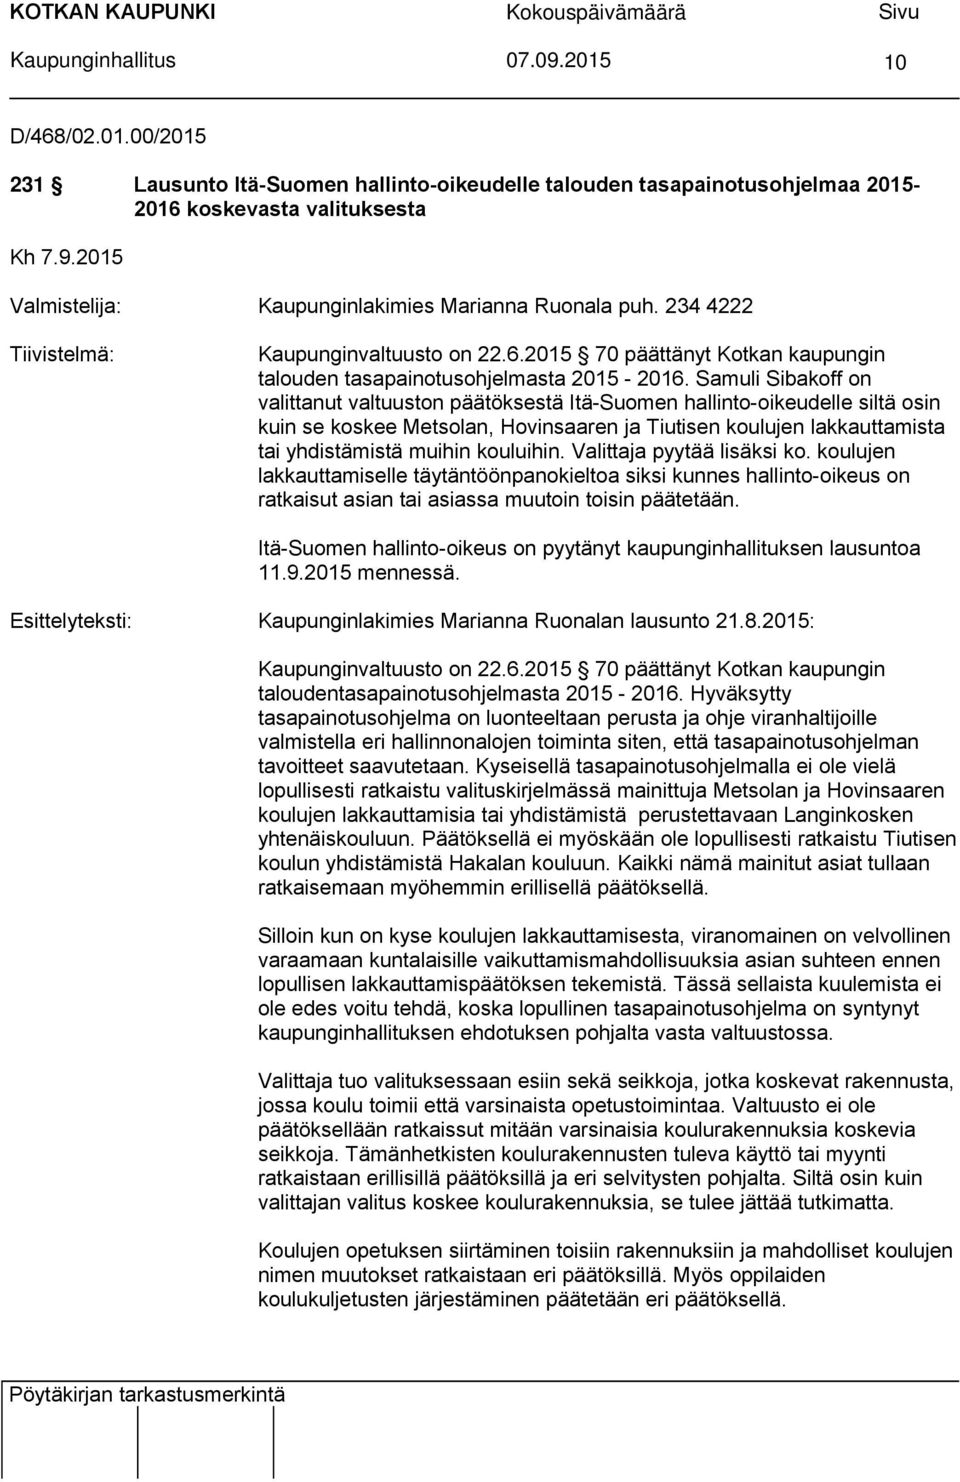 Samuli Sibakoff on valittanut valtuuston päätöksestä Itä-Suomen hallinto-oikeudelle siltä osin kuin se koskee Metsolan, Hovinsaaren ja Tiutisen koulujen lakkauttamista tai yhdistämistä muihin